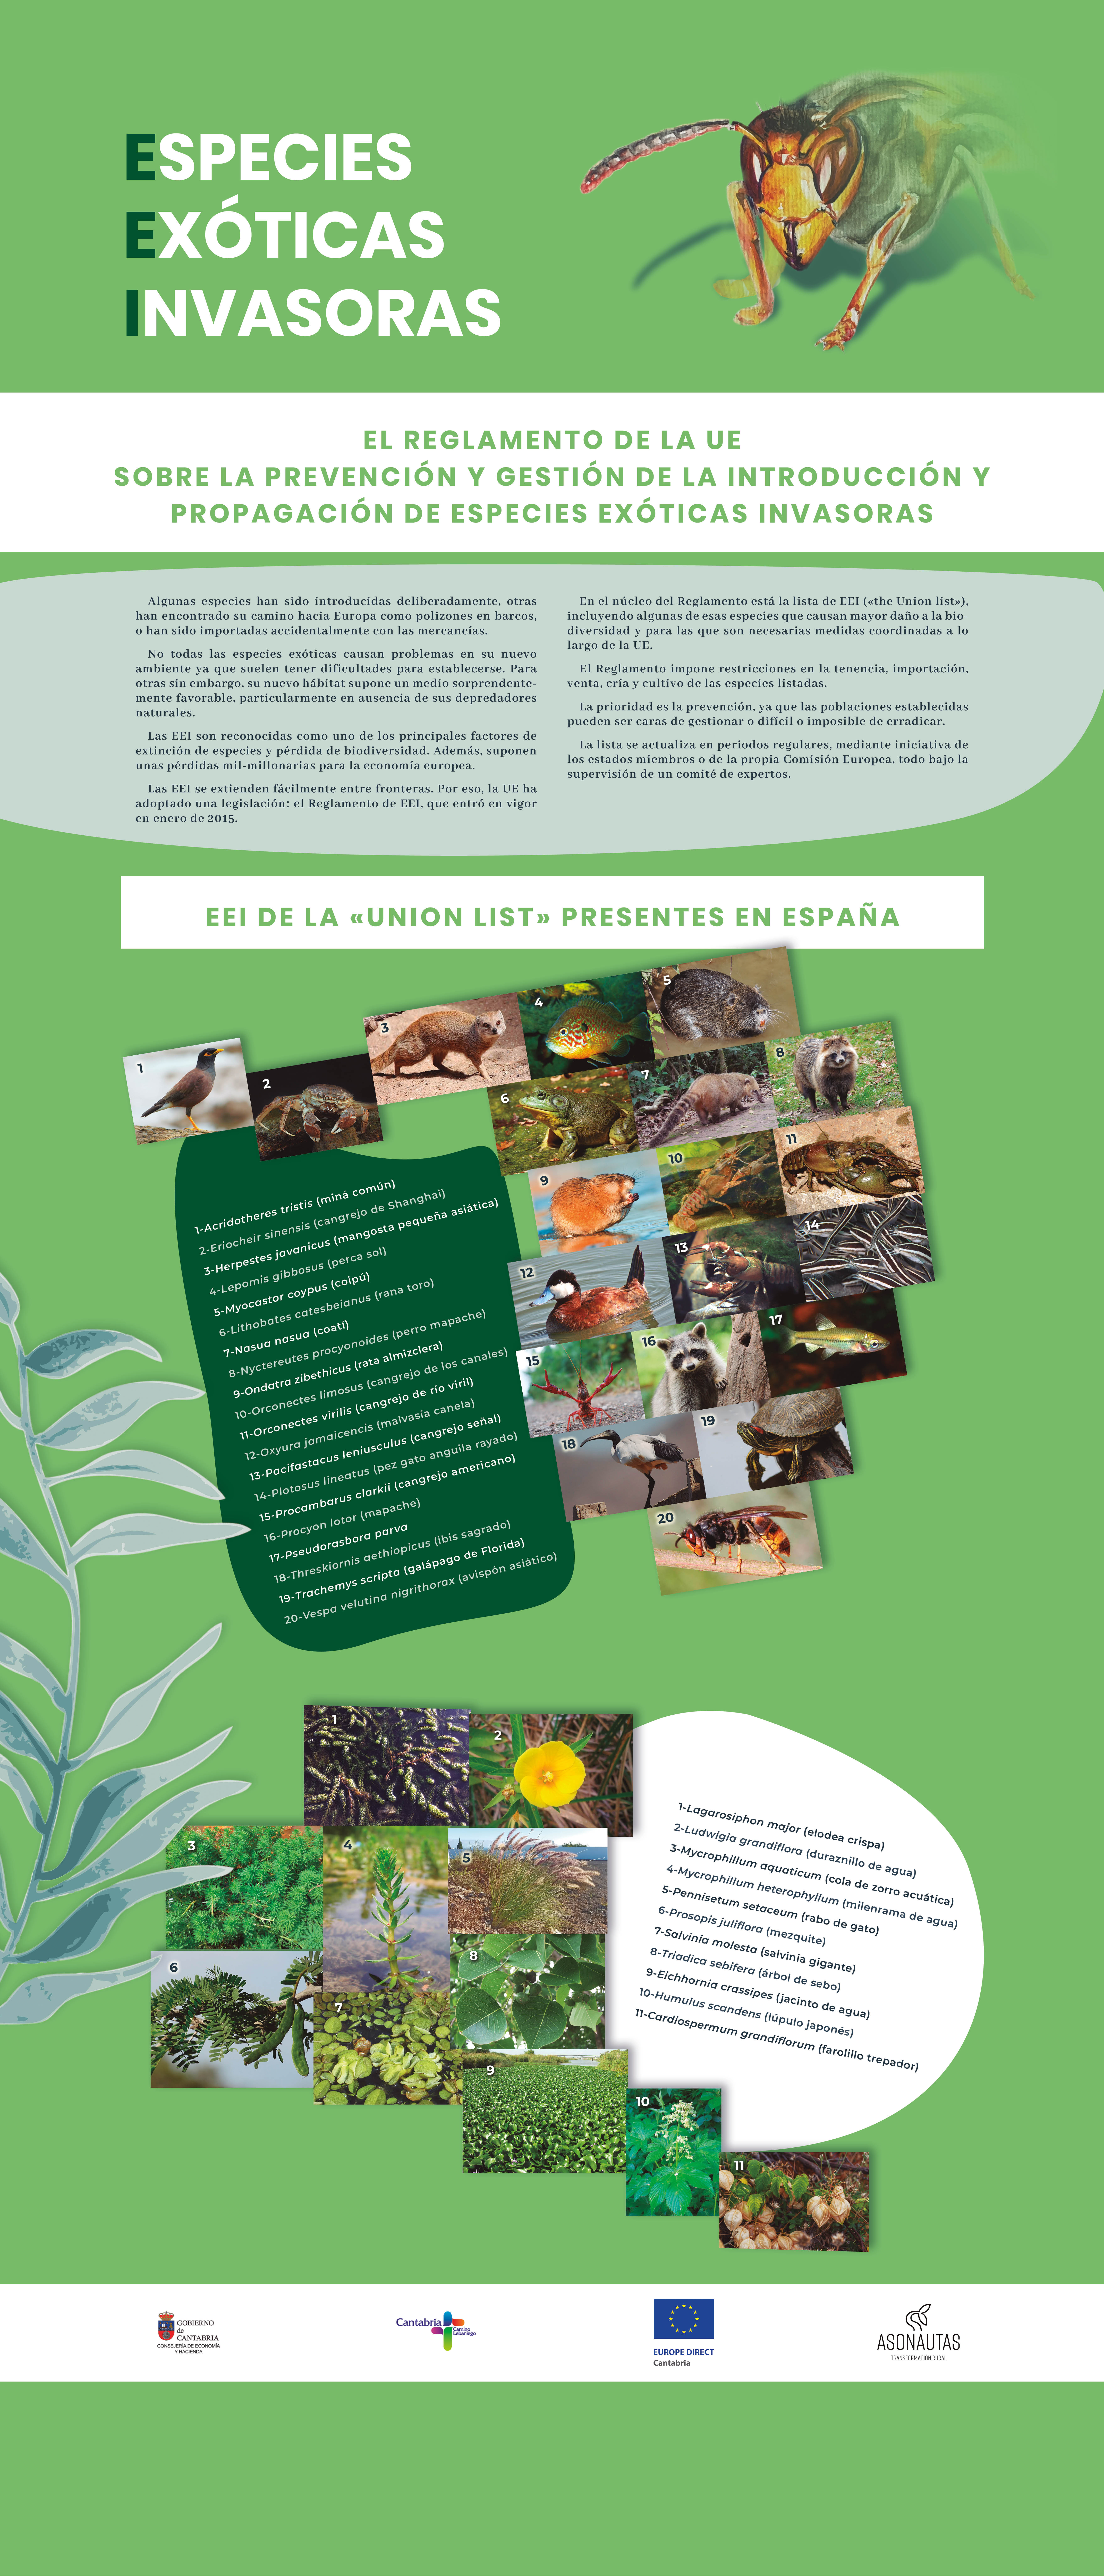 Especies Exóticas Invasoras. El reglamento de la UE sobre prevención y gestión de Especies Exóticas Invasoras